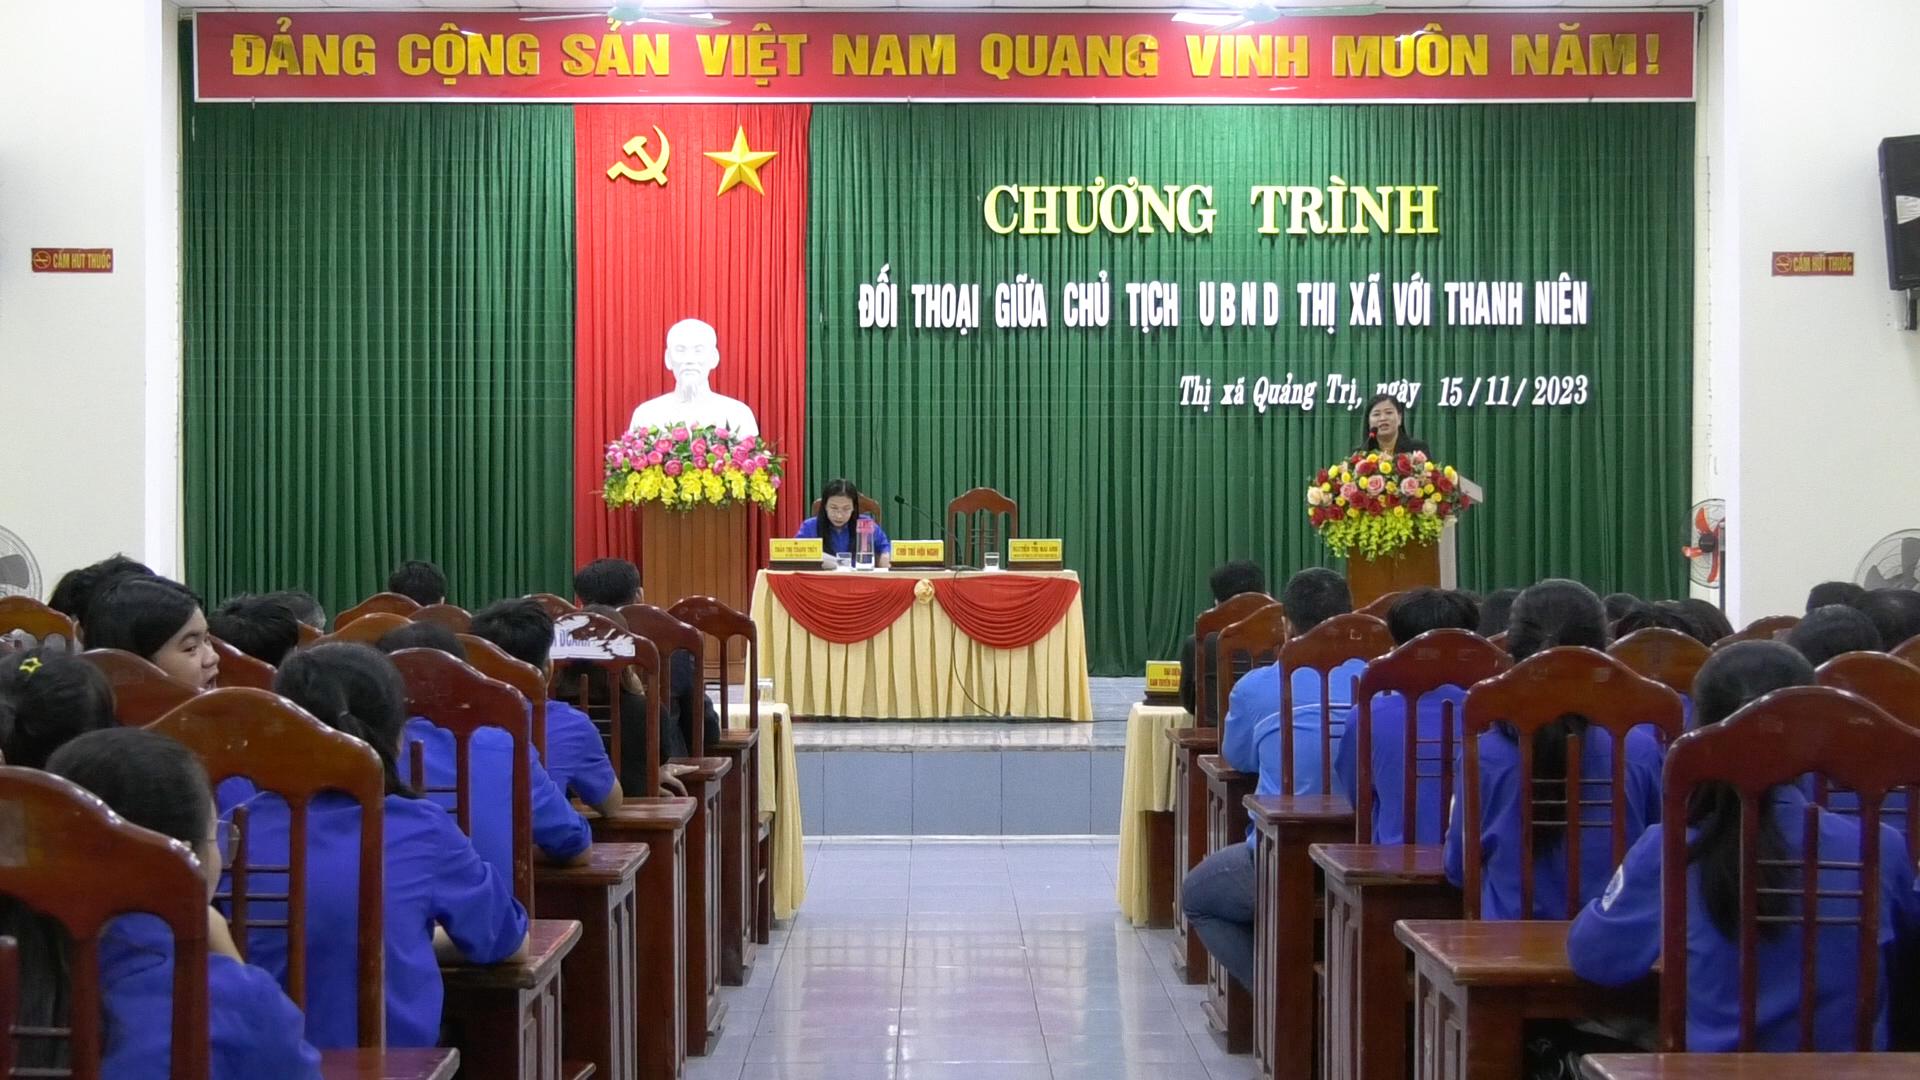 Chủ tịch UBND thị xã Quảng Trị đối thoại với thanh niên